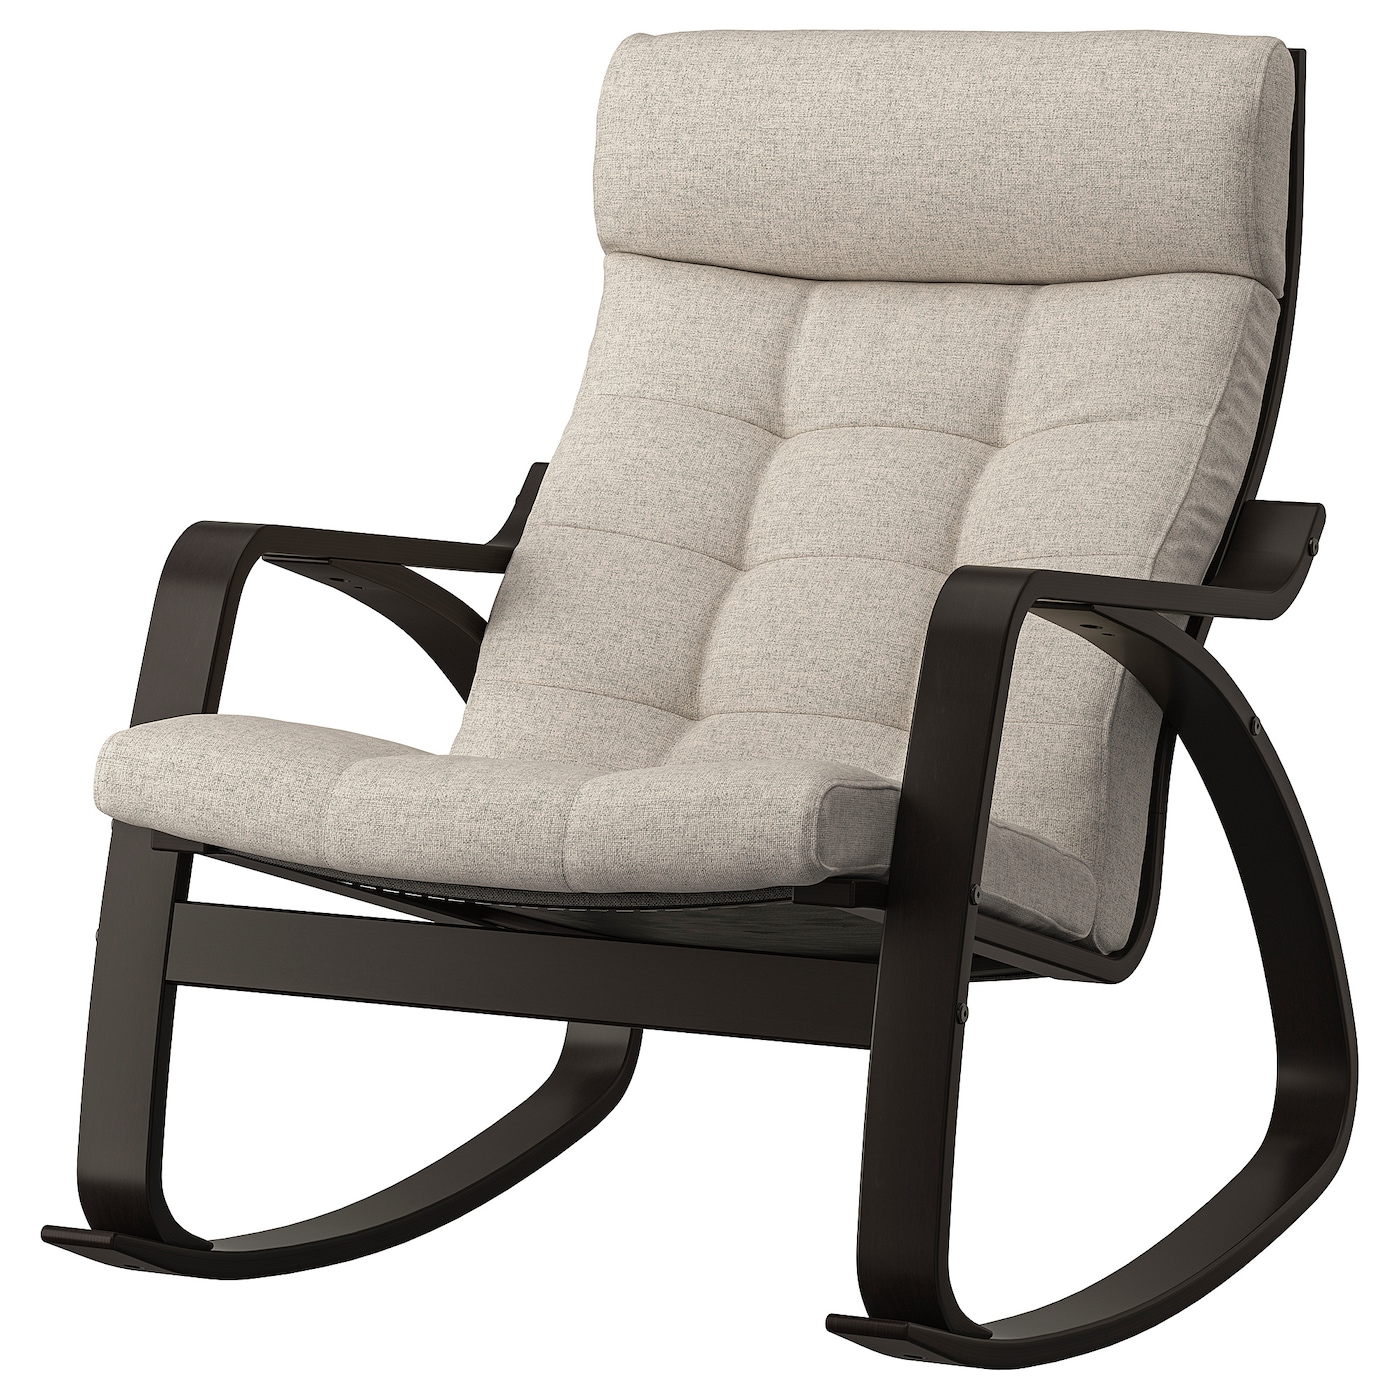 ПОЭНГ Кресло-качалка, черно-коричневый/Гуннаред бежевый POÄNG IKEA кресло качалка добропаровъ 2554867 бежевый